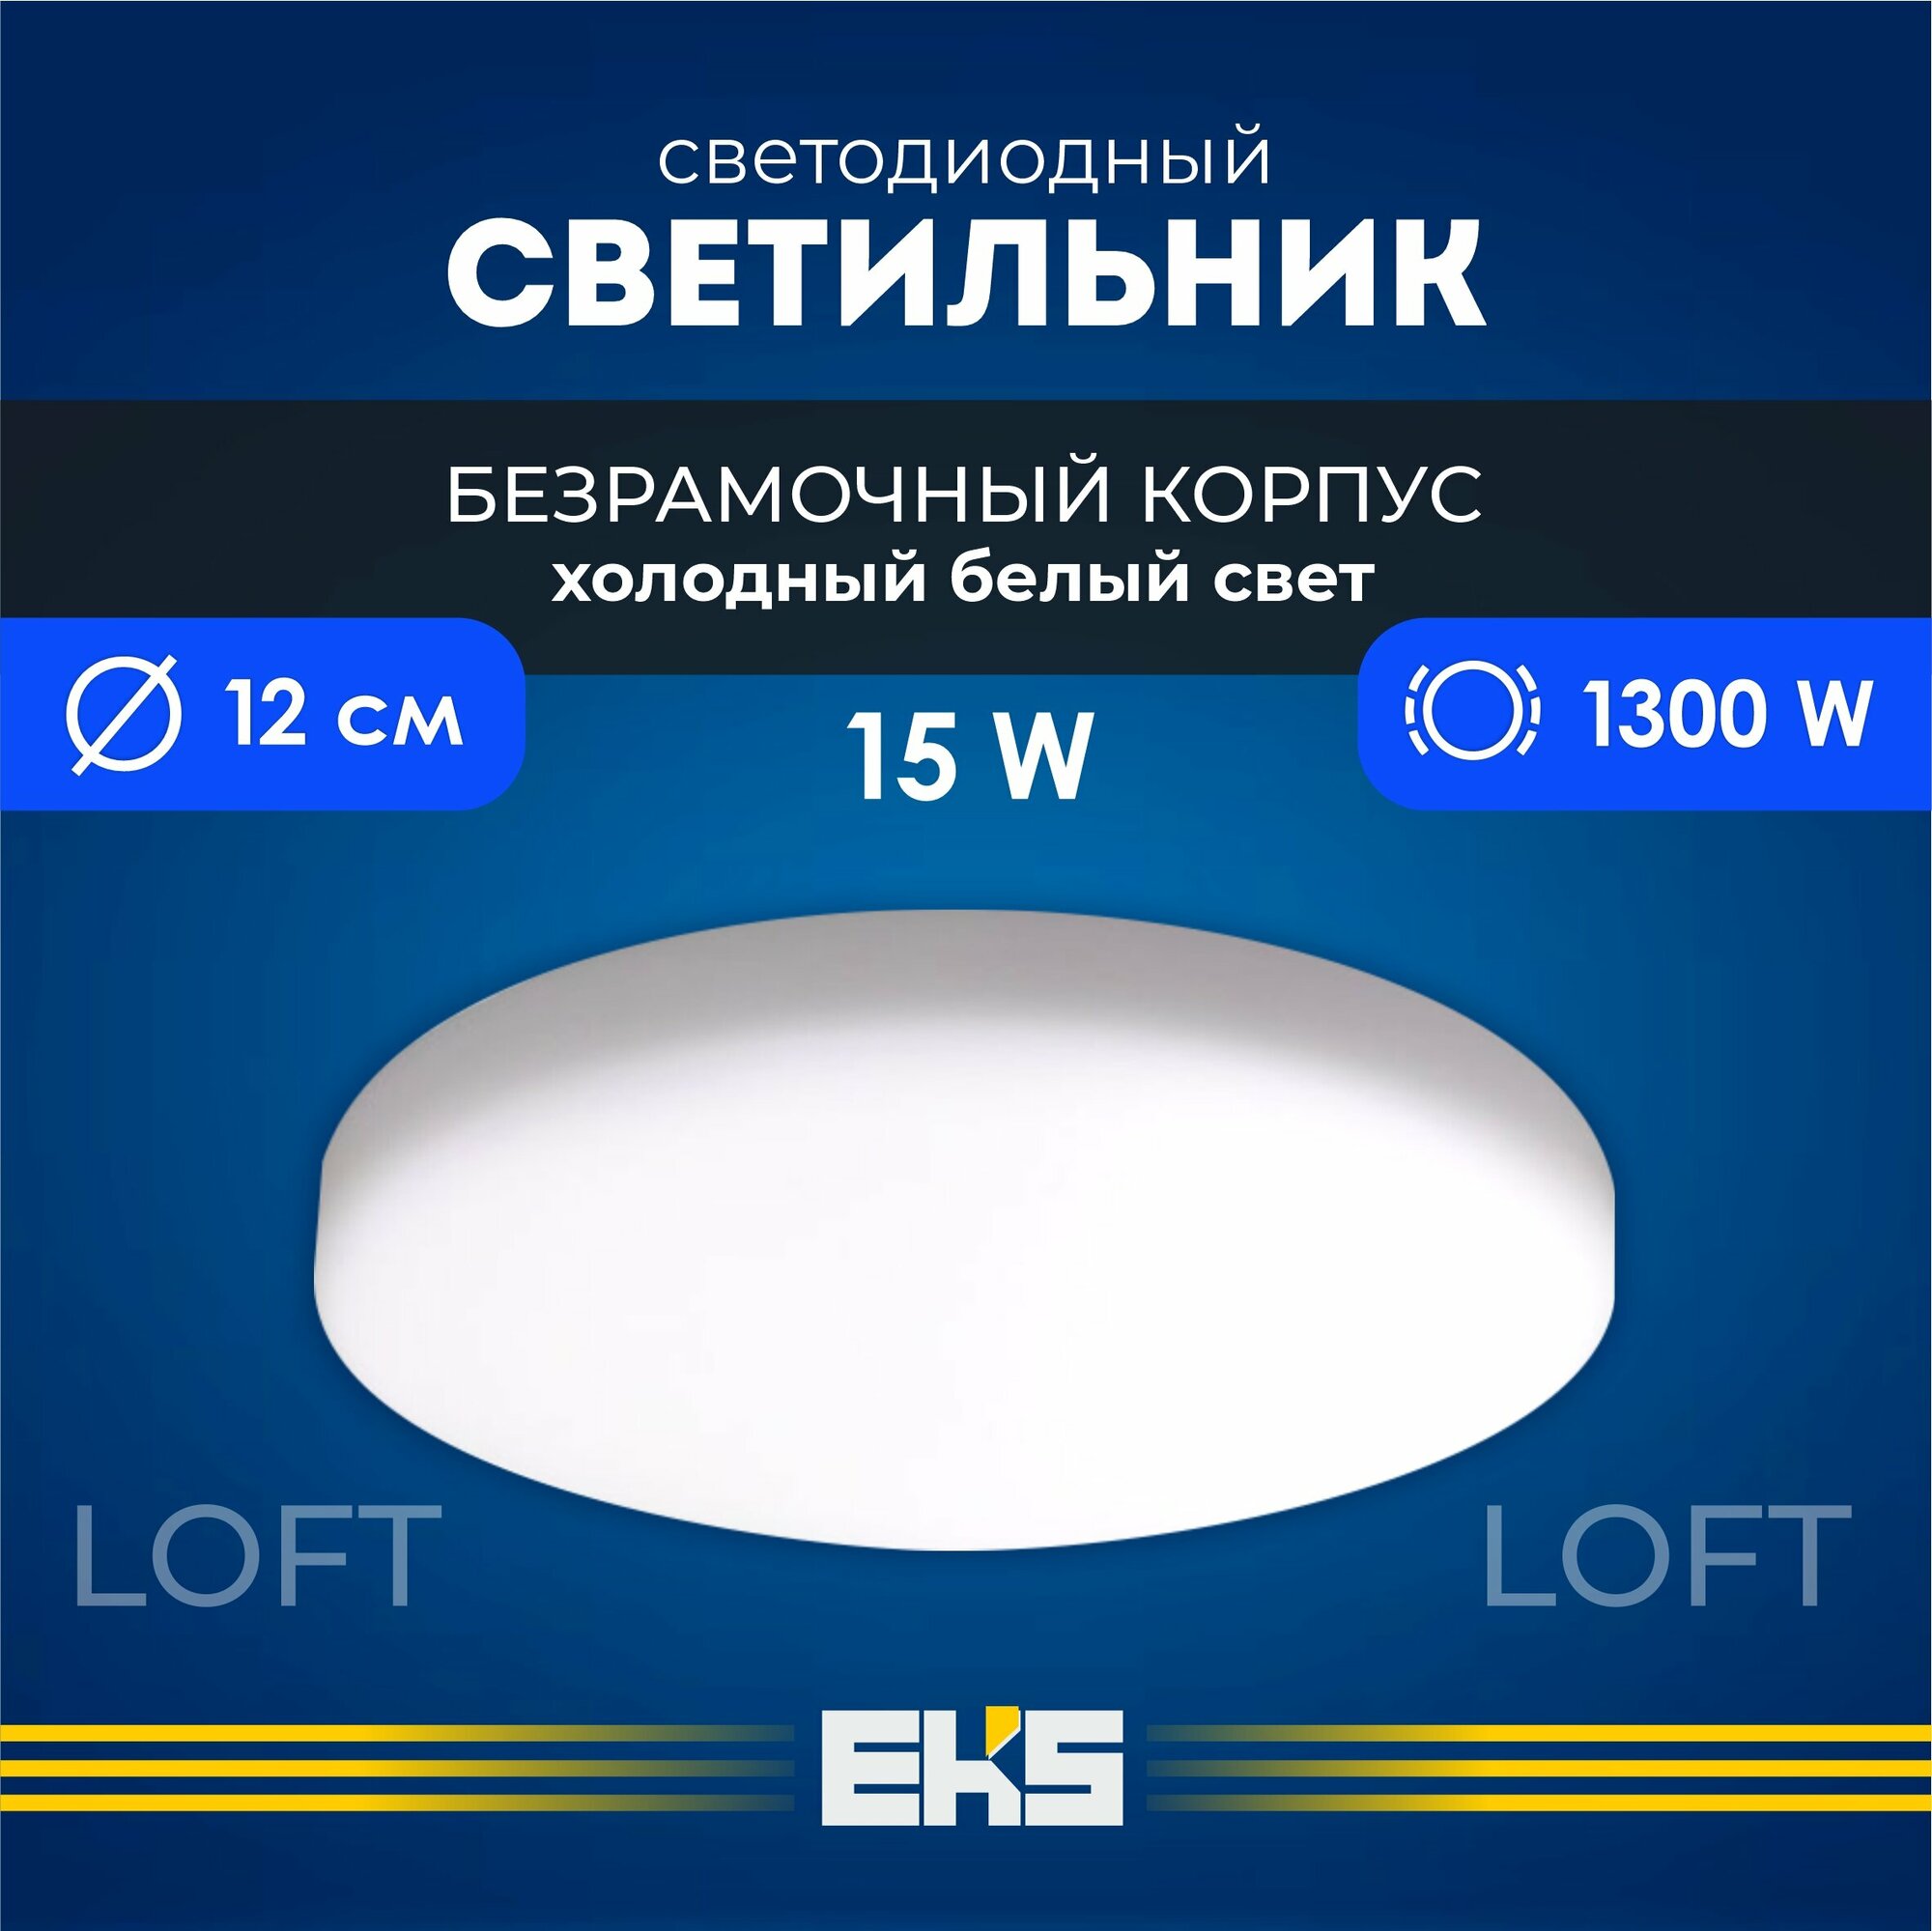 Встраиваемый светильник EKS LOFT - Светодиодная панель, LED панель круглая безрамочная (15 Вт, 1300 Лм, 6500К), 1 шт.